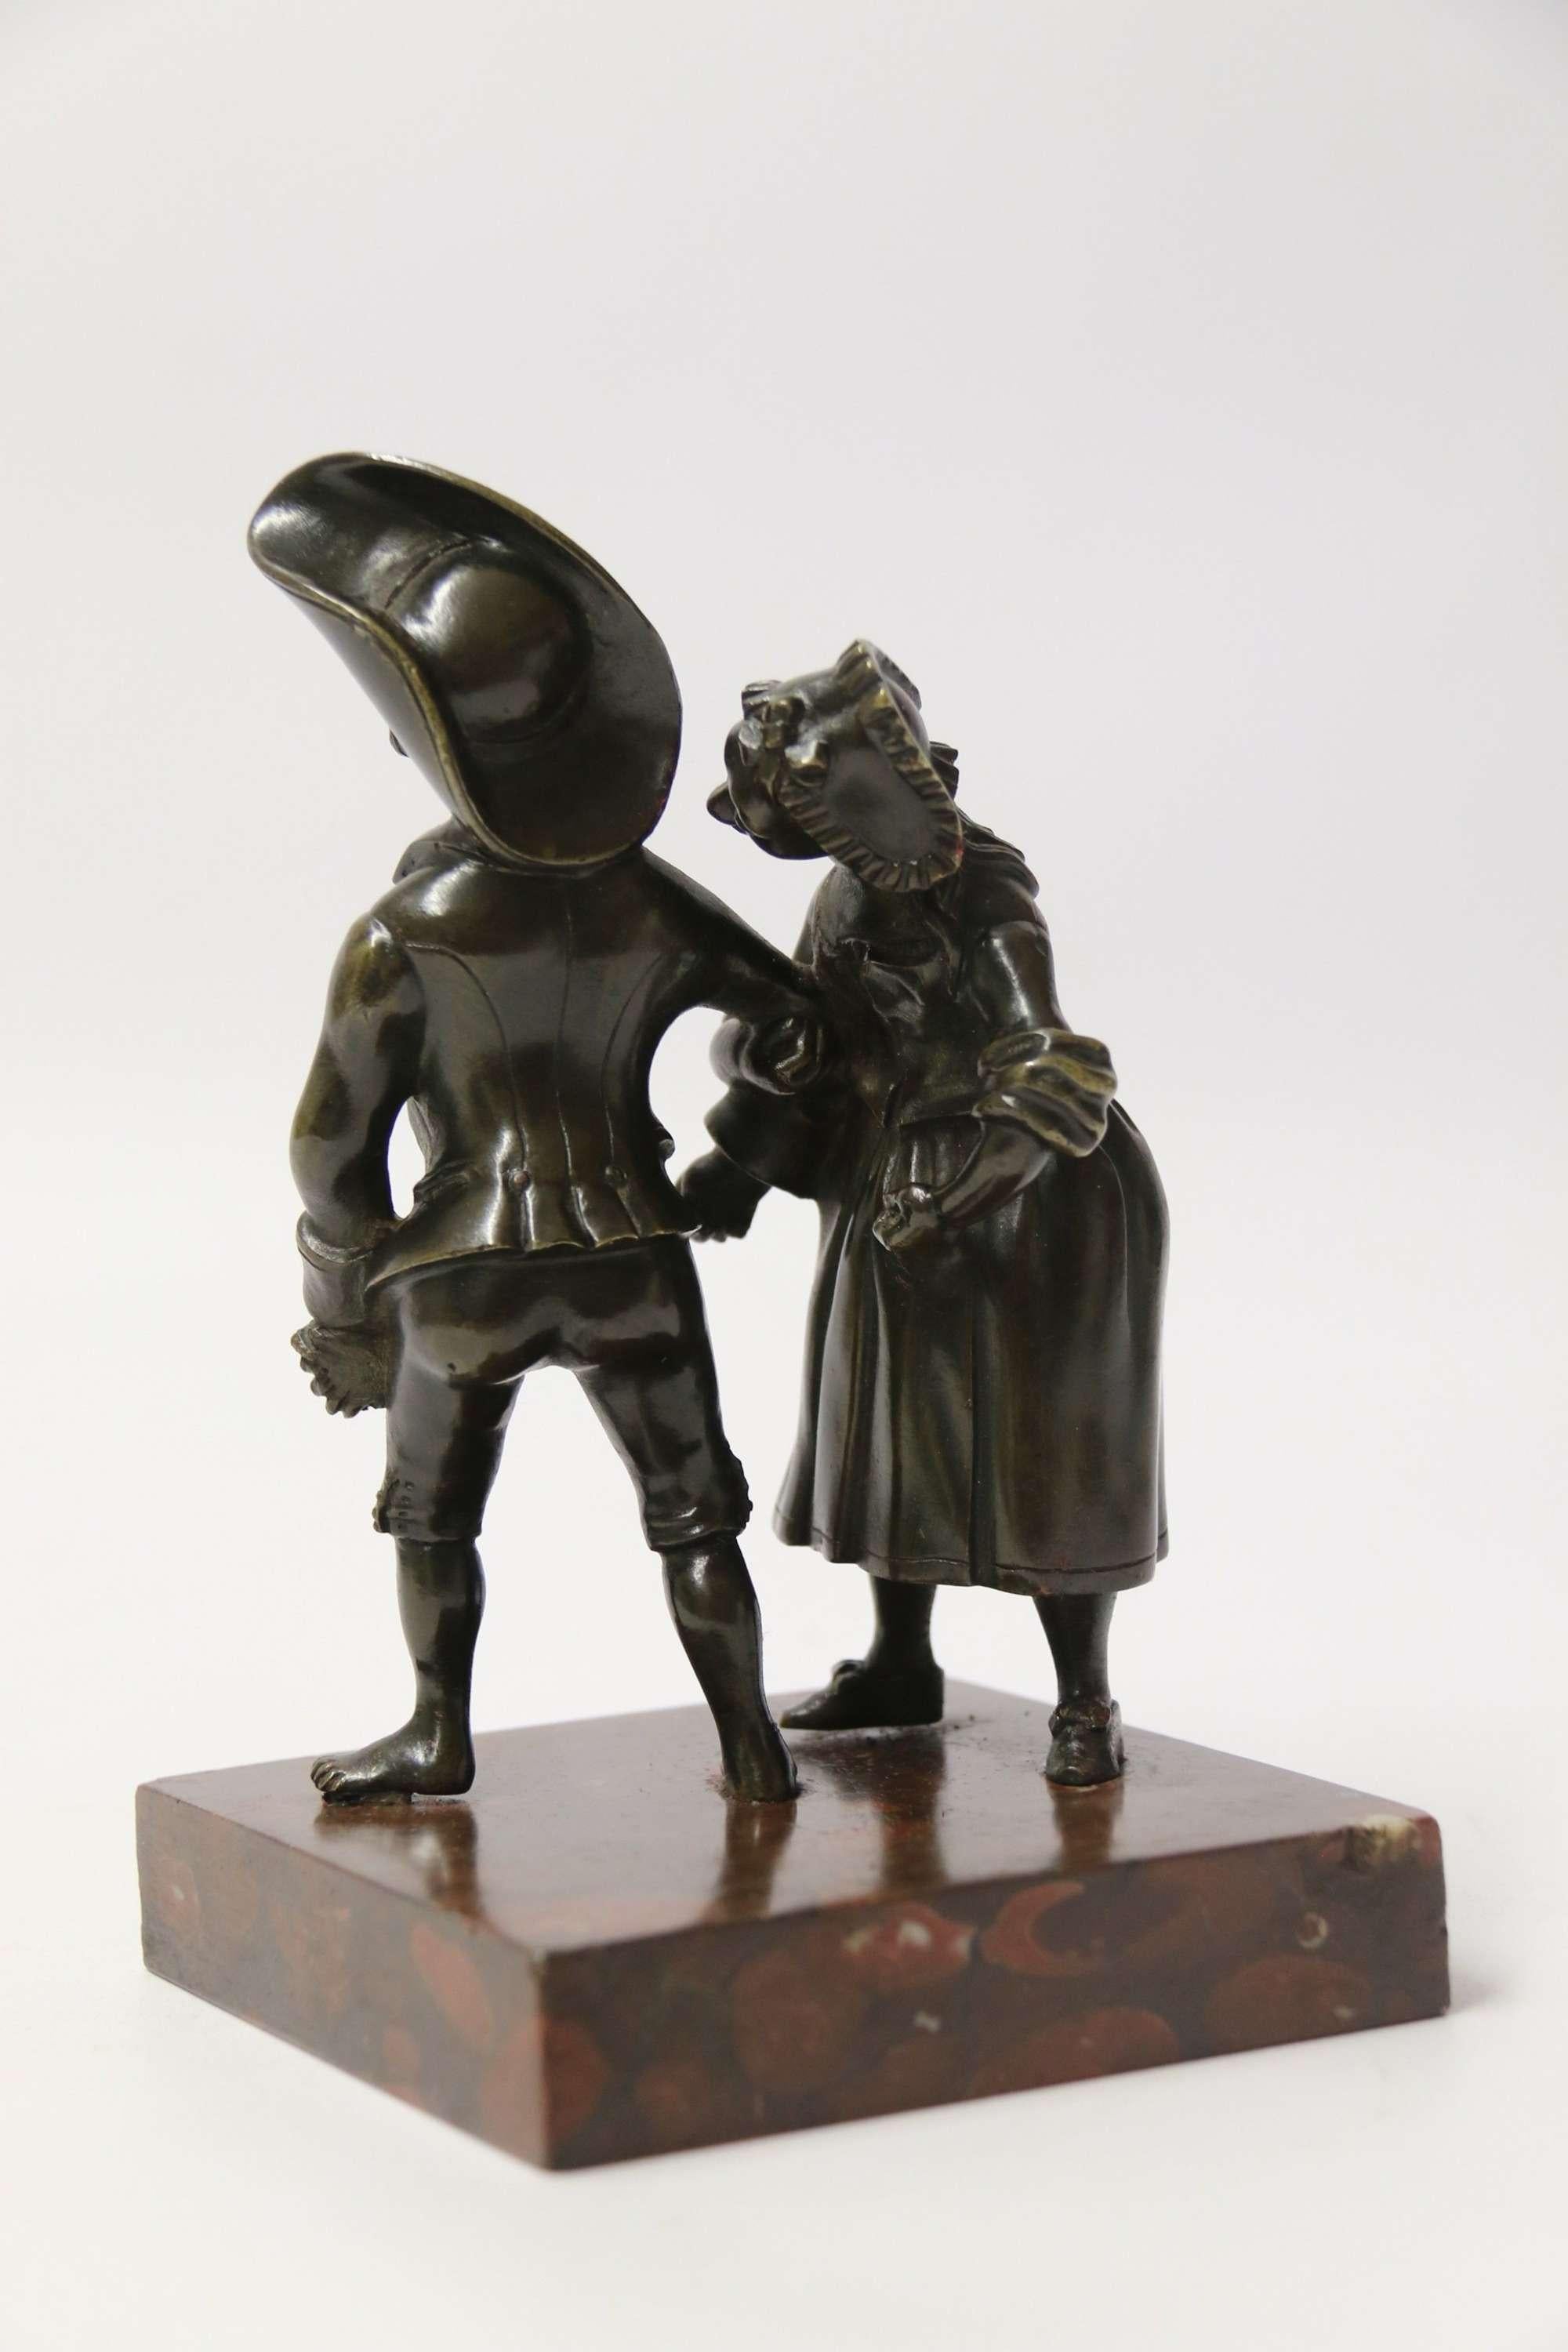 Un amusant bronze italien du XIXe siècle représentant un jeune couple en train de danser.

Ce bronze italien de qualité inhabituelle représente un jeune homme et une femme de la campagne du XVIIIe siècle, habillés de façon typique pour l'époque.